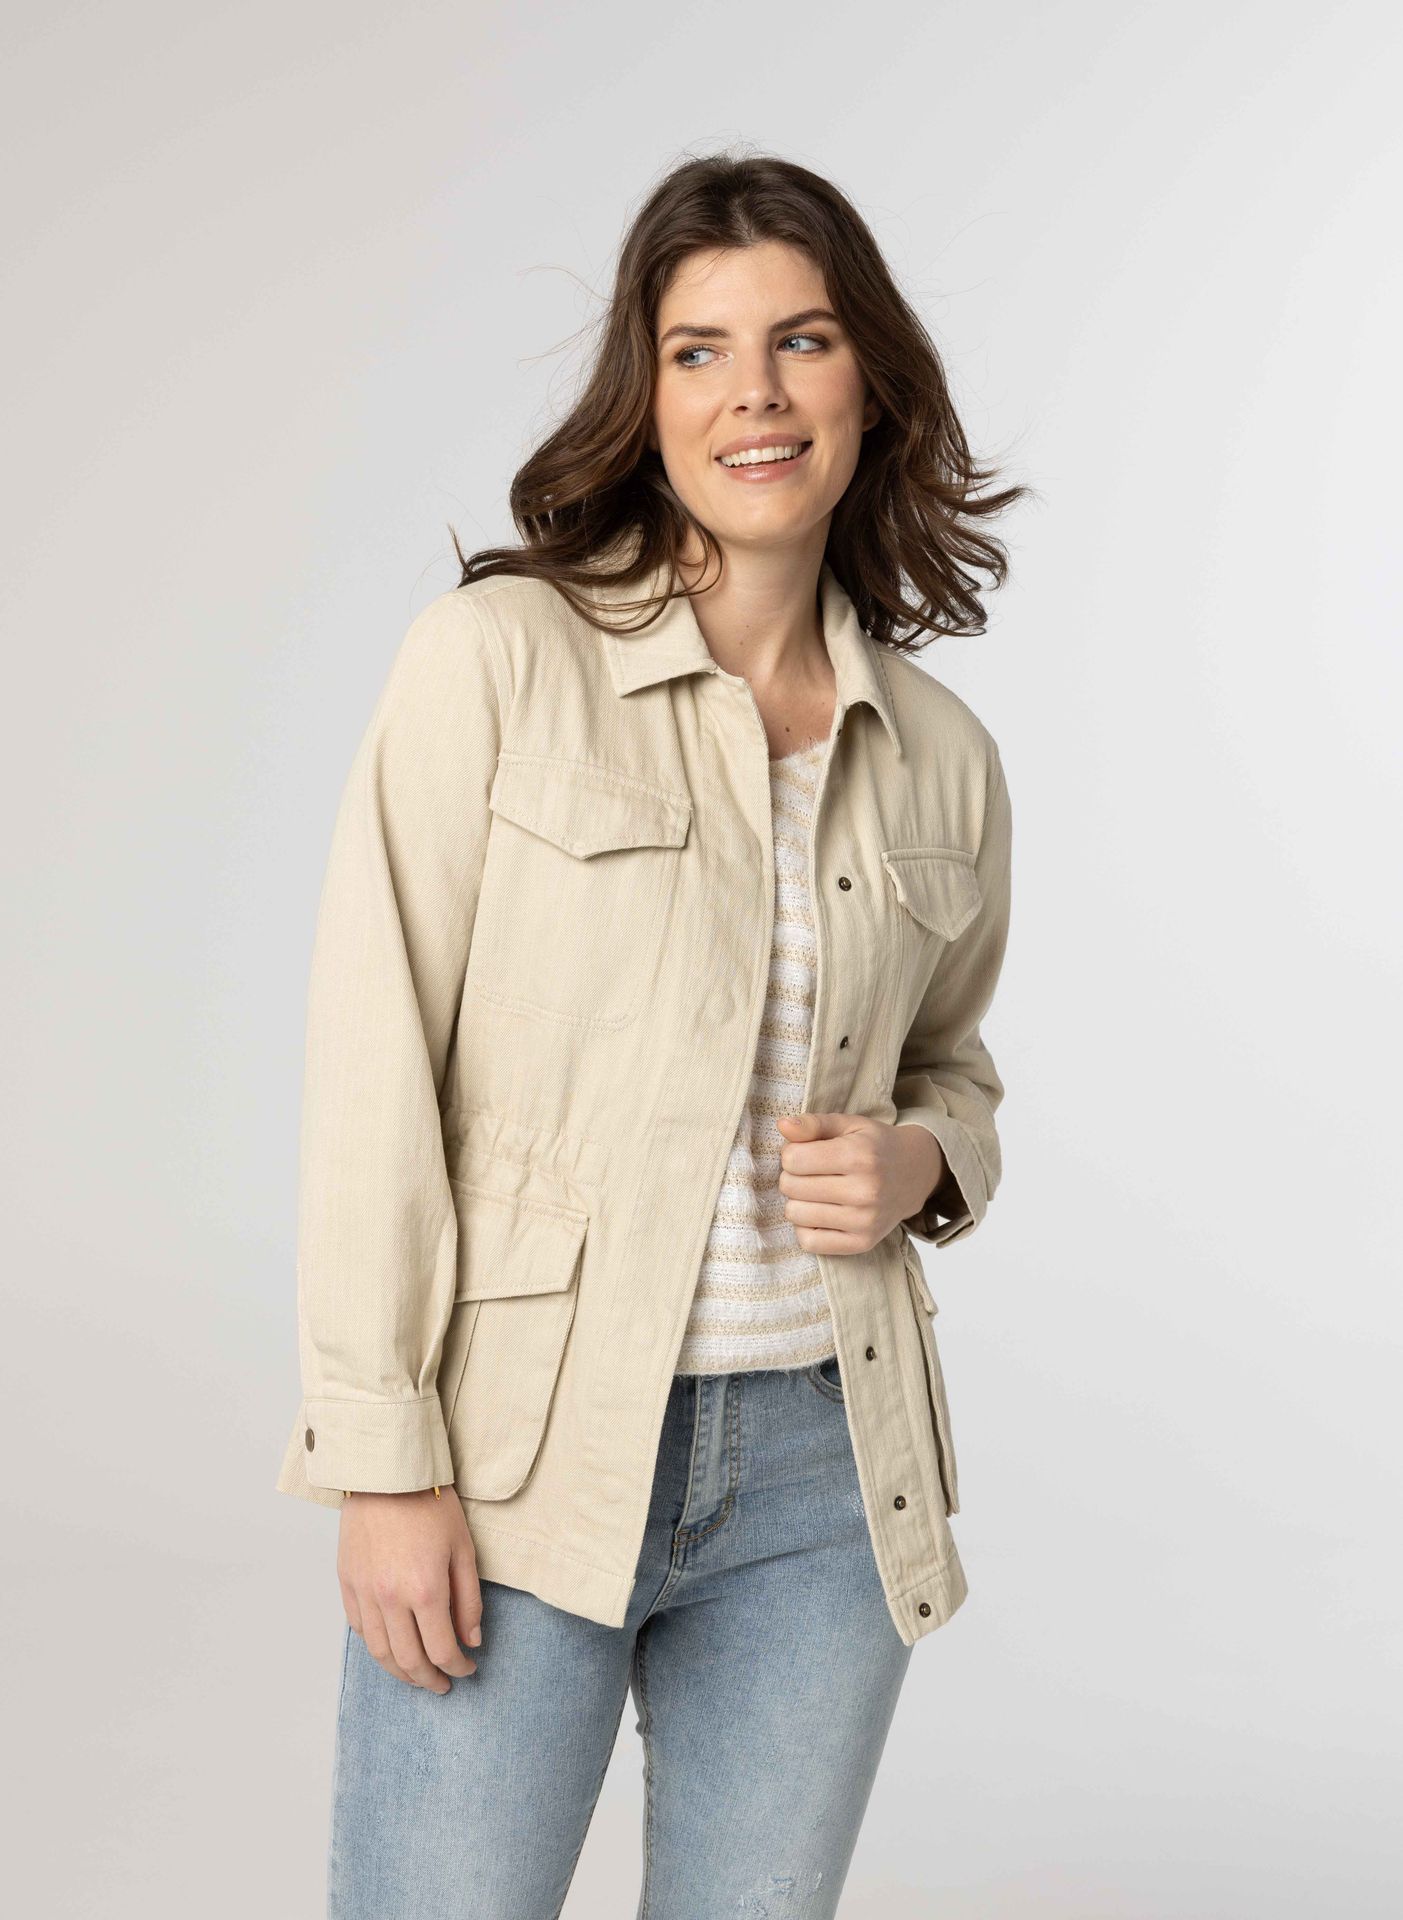 Norah Katoenen jacket oyster 212632-109